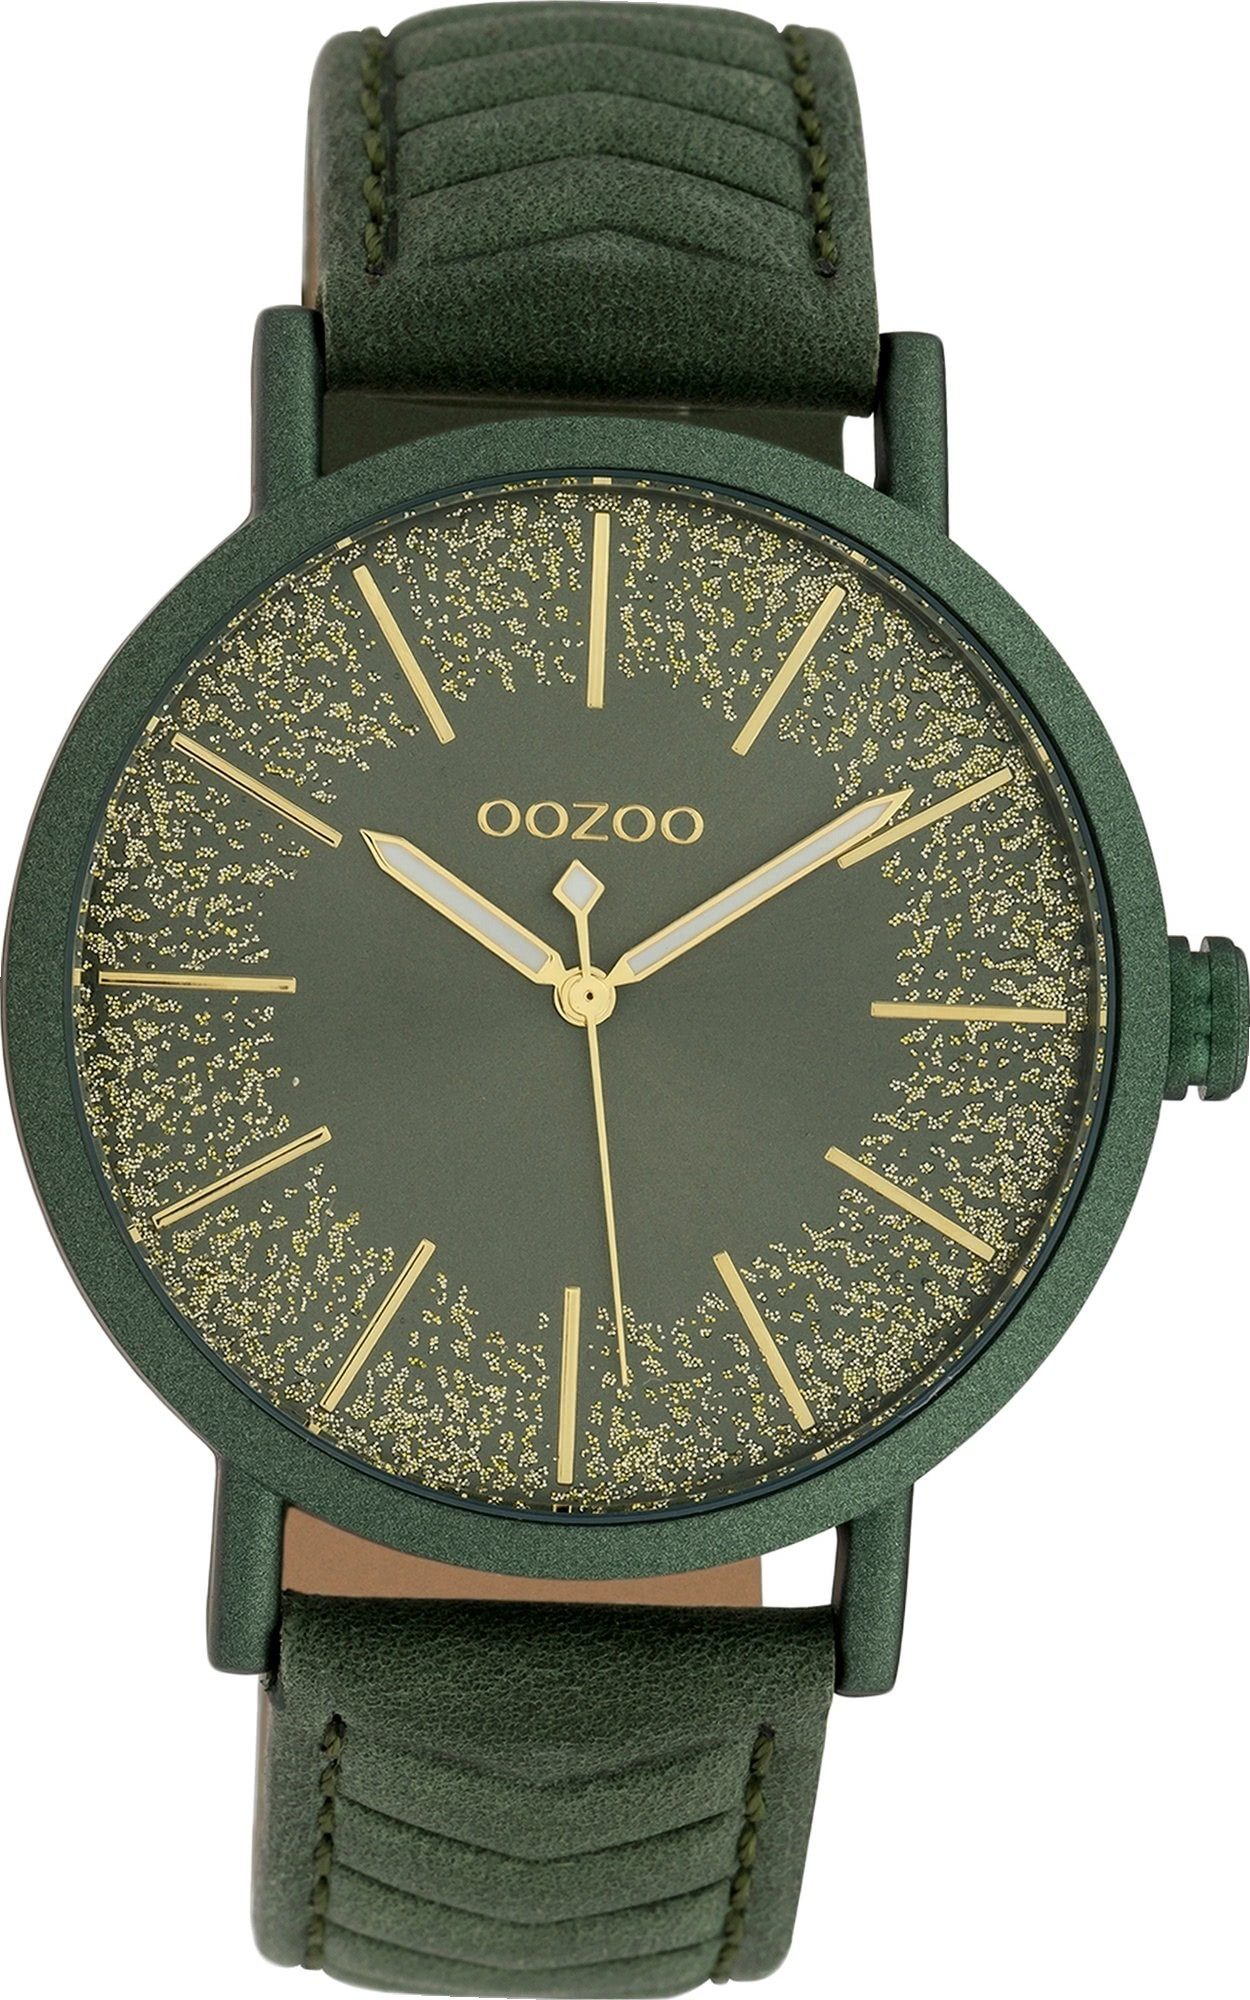 OOZOO Quarzuhr Oozoo Leder Damen Uhr C10148 Analog, Damenuhr Lederarmband grün, rundes Gehäuse, groß (ca. 42mm)